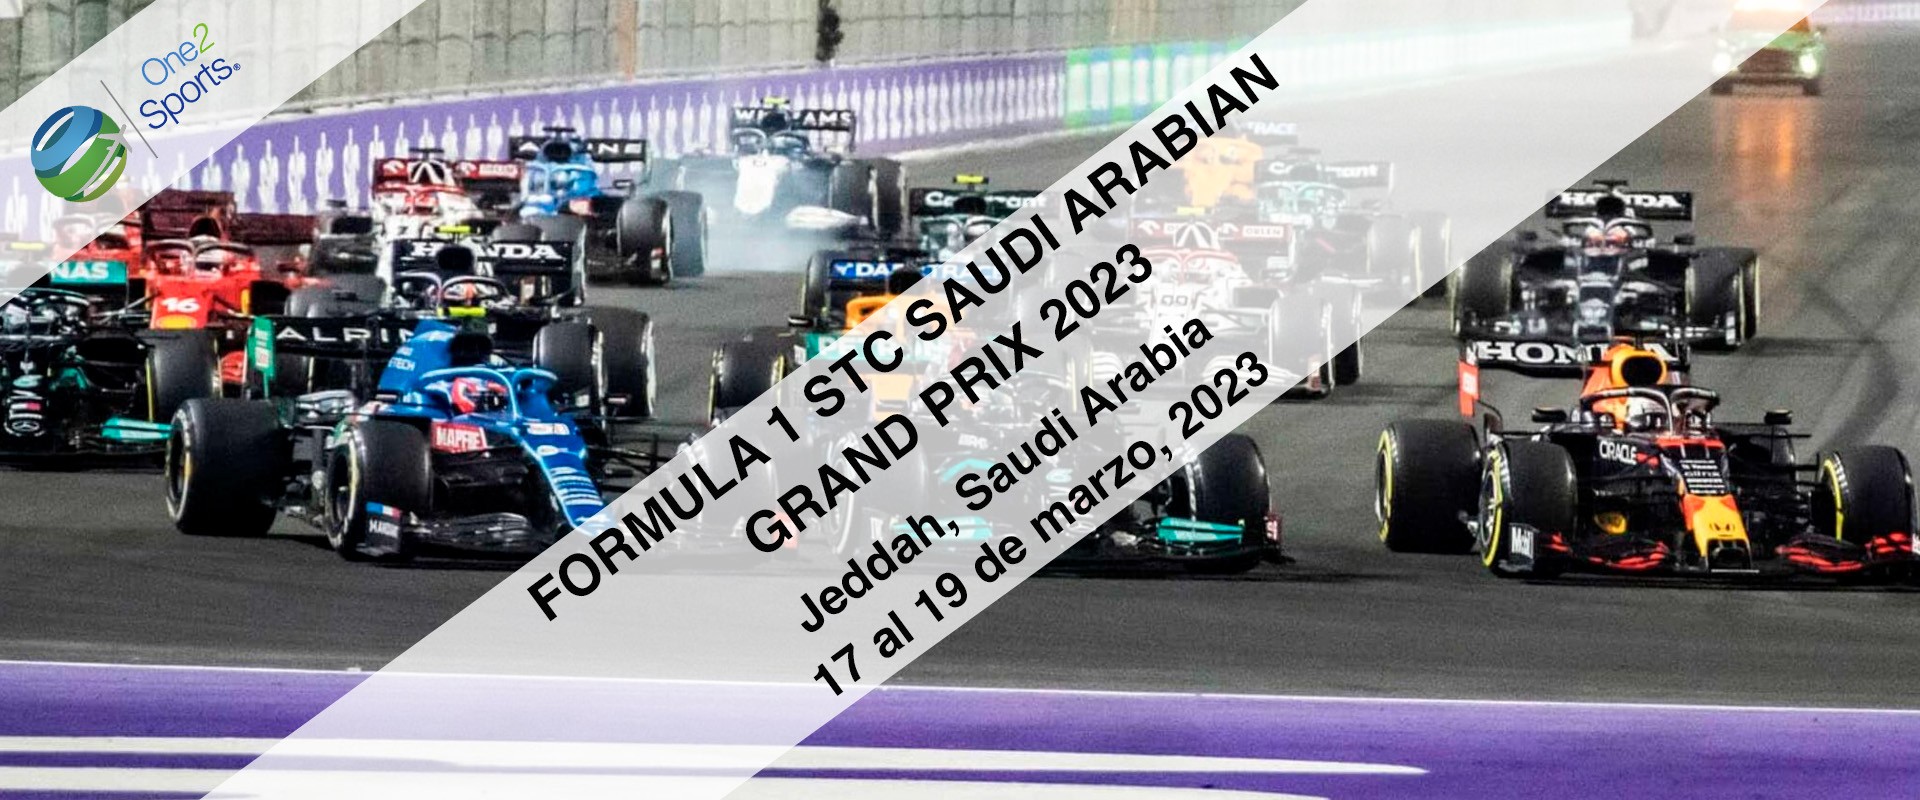 F1 Gran Premio de Arabia Saudita